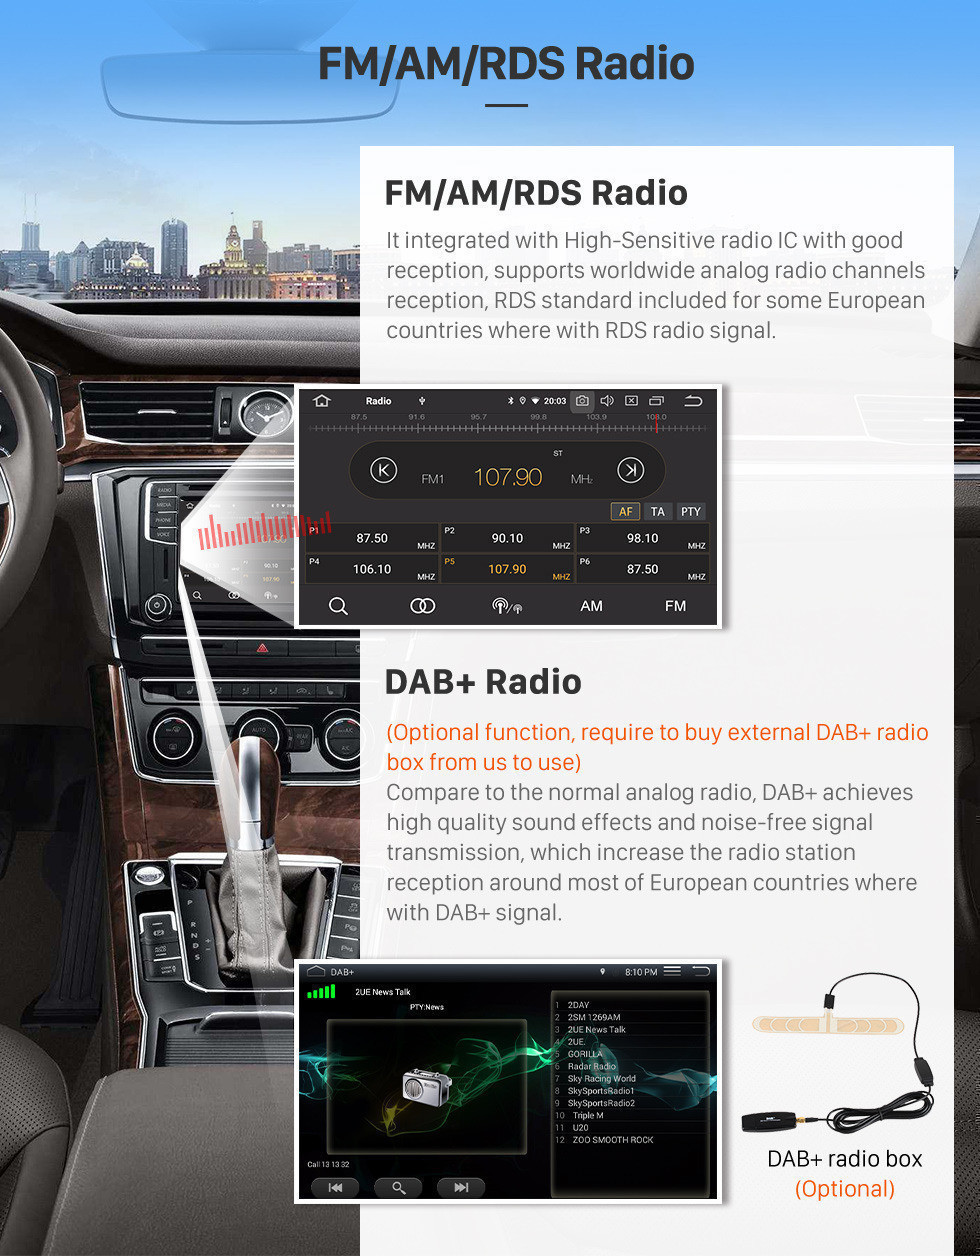 Seicane 2005-2015 Hyundai Santa Fe 9 polegada Android 11.0 HD touchscreen Bluetooth Rádio Navegação GPS AUX FM MP4 música suporte Wi-Fi Carplay USB 4G Câmera de Backup DVR SWC